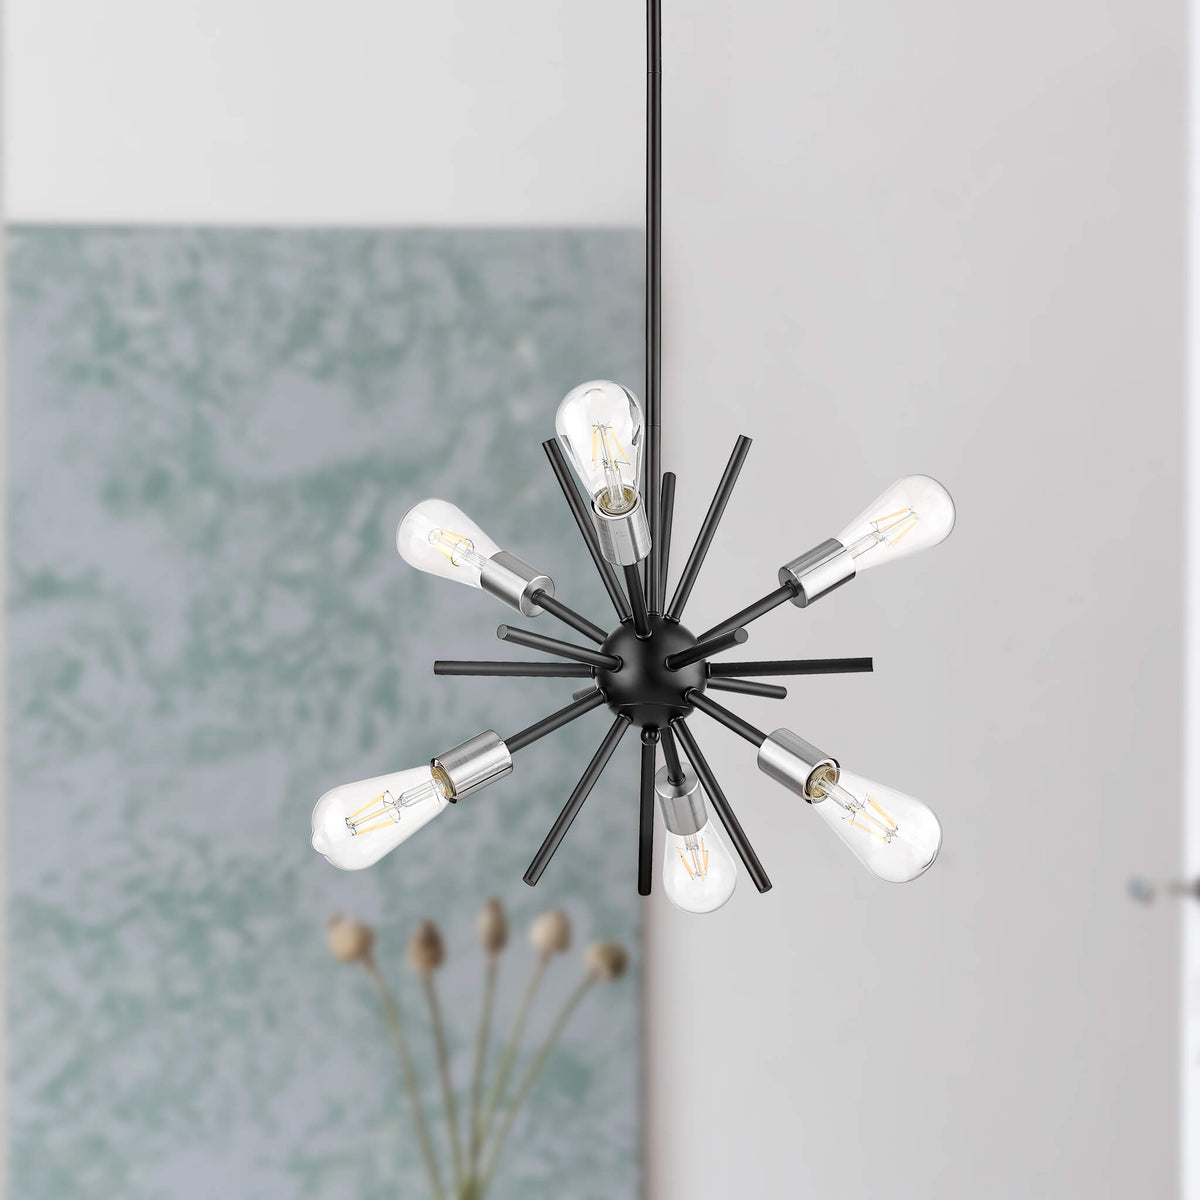 sputnik pendant light hanging in living room